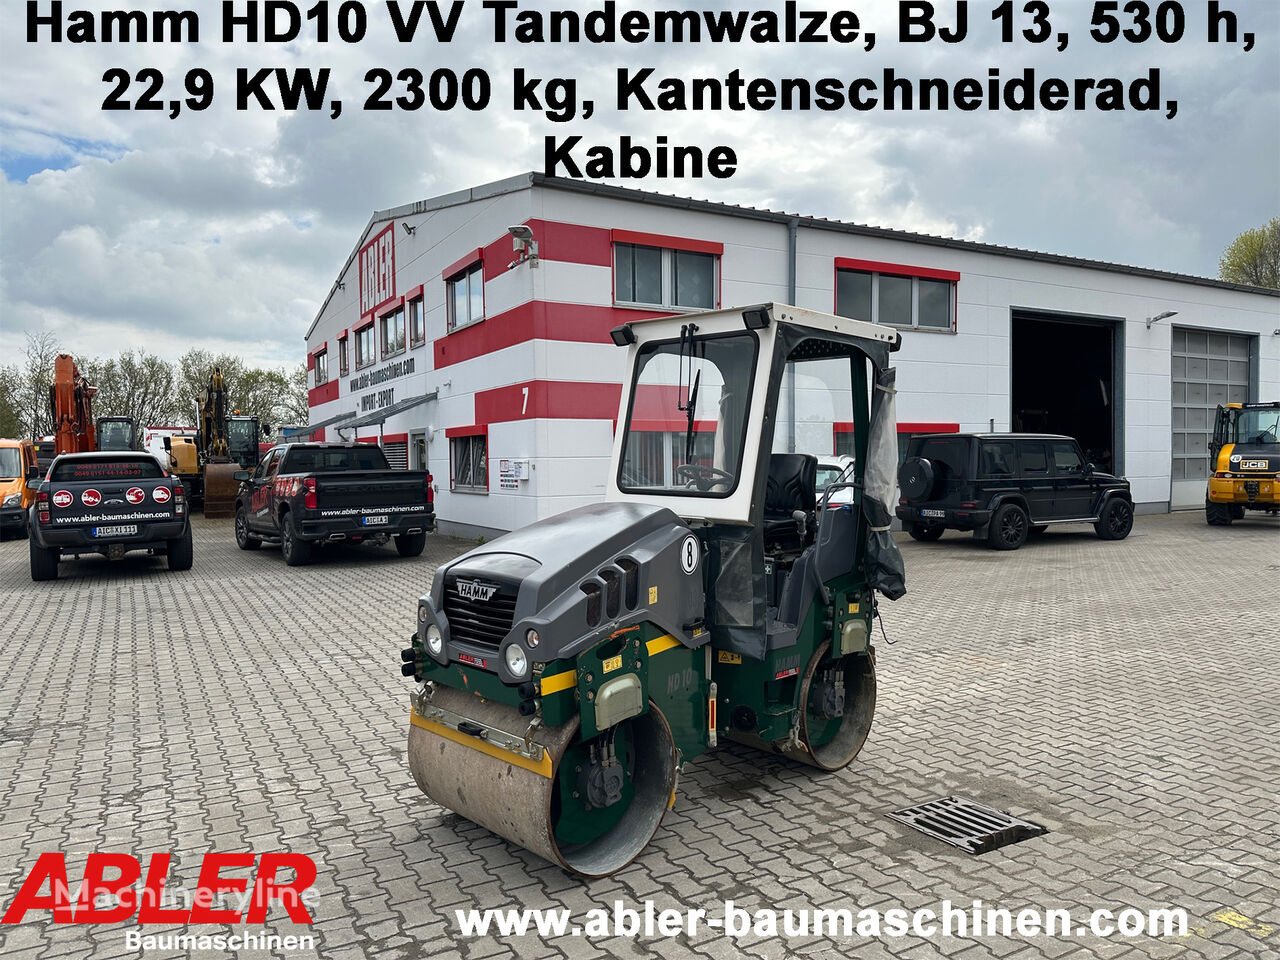 Hamm HD 10 VV Tandemwalze mit Kabine mini road roller